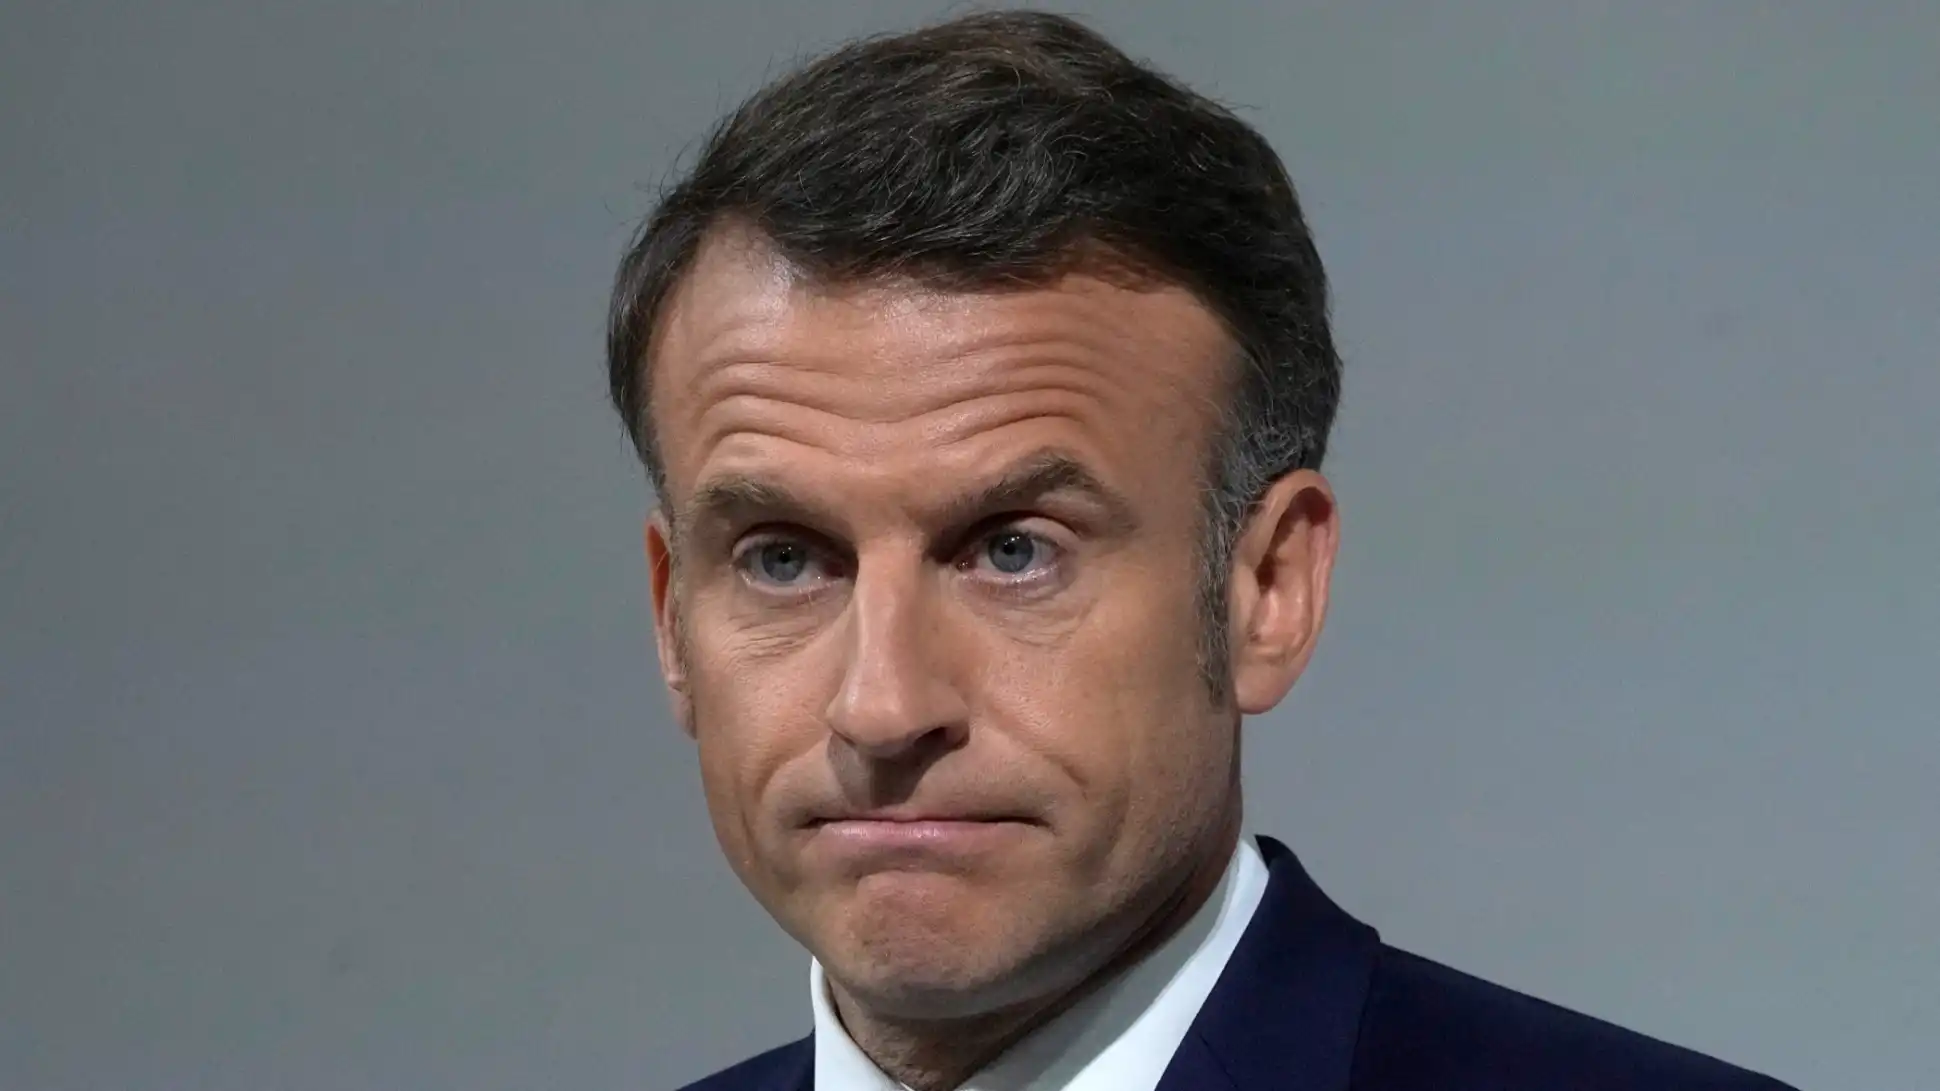 Macron forma una alianza contra la extrema derecha francesa, mientras los republicanos abandonan al jefe del partido